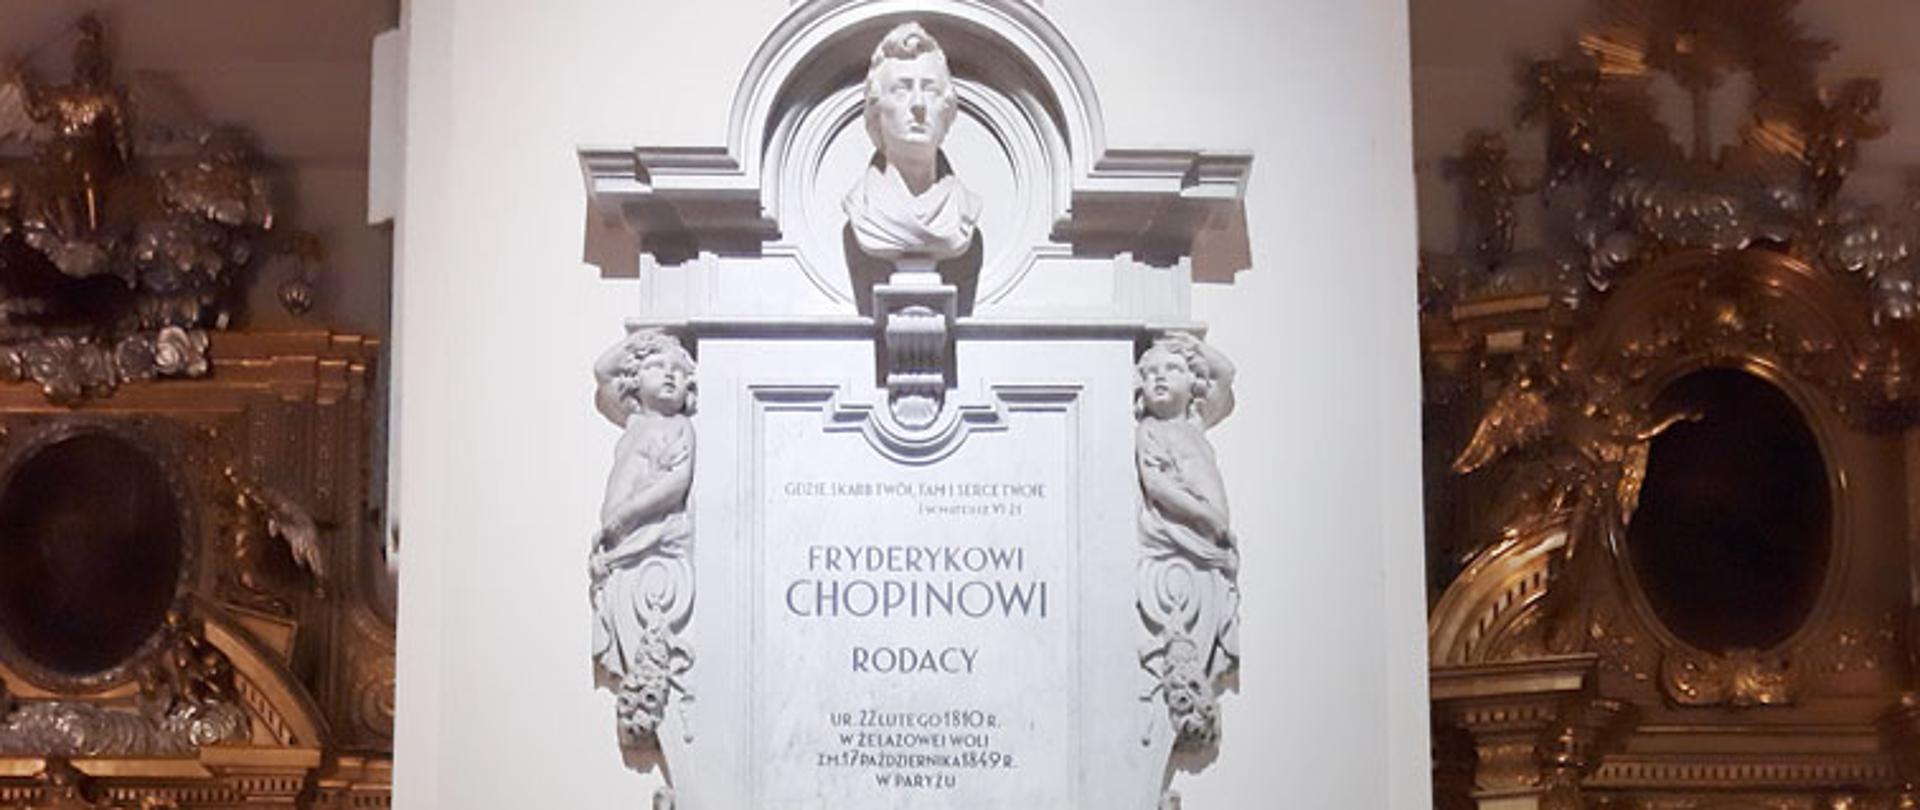 Fotografia - Wiązanka kwiatów złożona pod pamiątkową płytą z popiersiem Fryderyka Chopina w Kościele św. Krzyża w Warszawie"